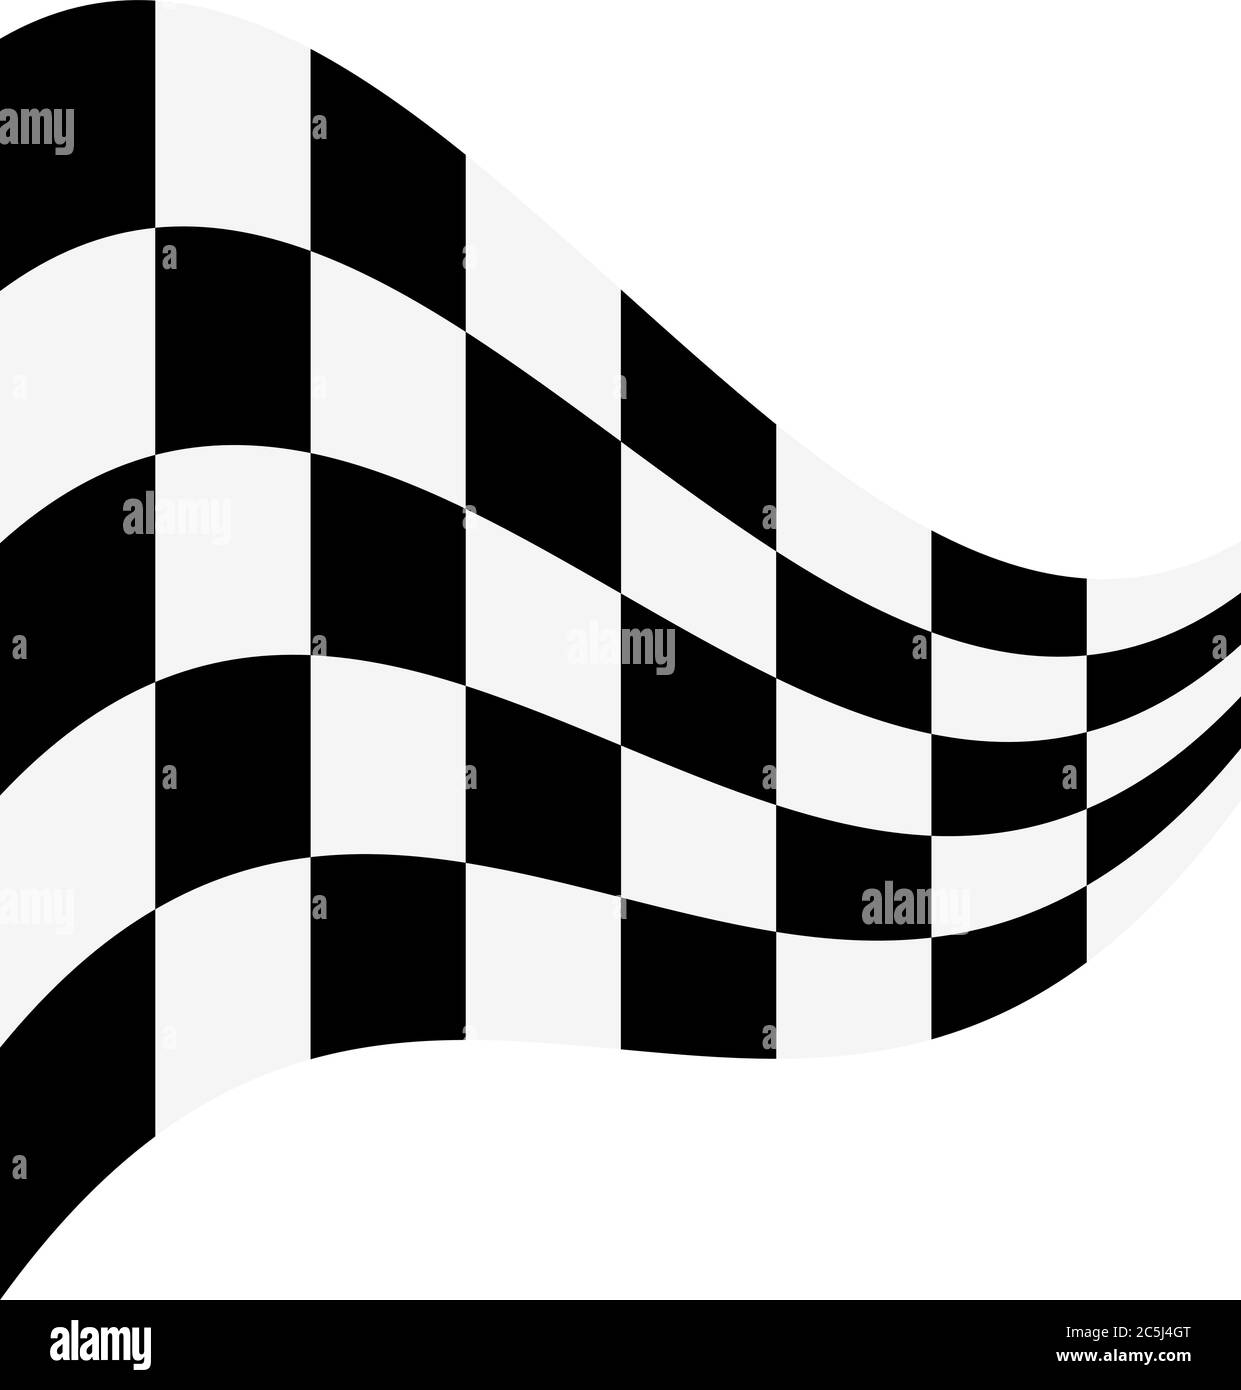 Illustrazione vettoriale con flag a scacchi su sfondo bianco Illustrazione Vettoriale